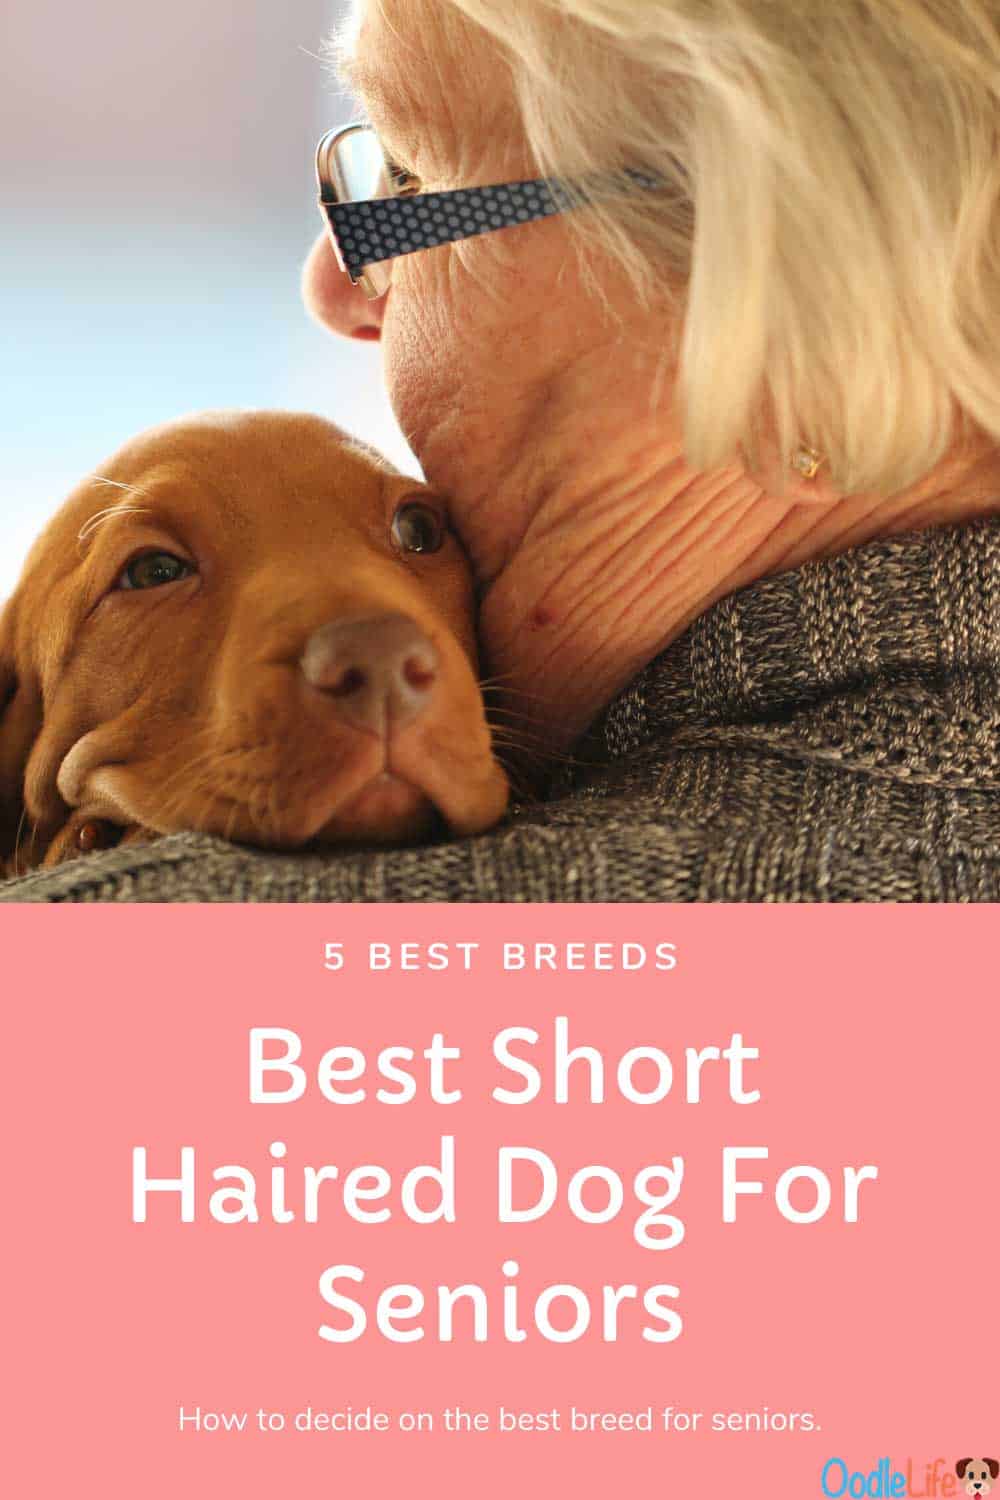 Small Short Haired Dog For Seniors 